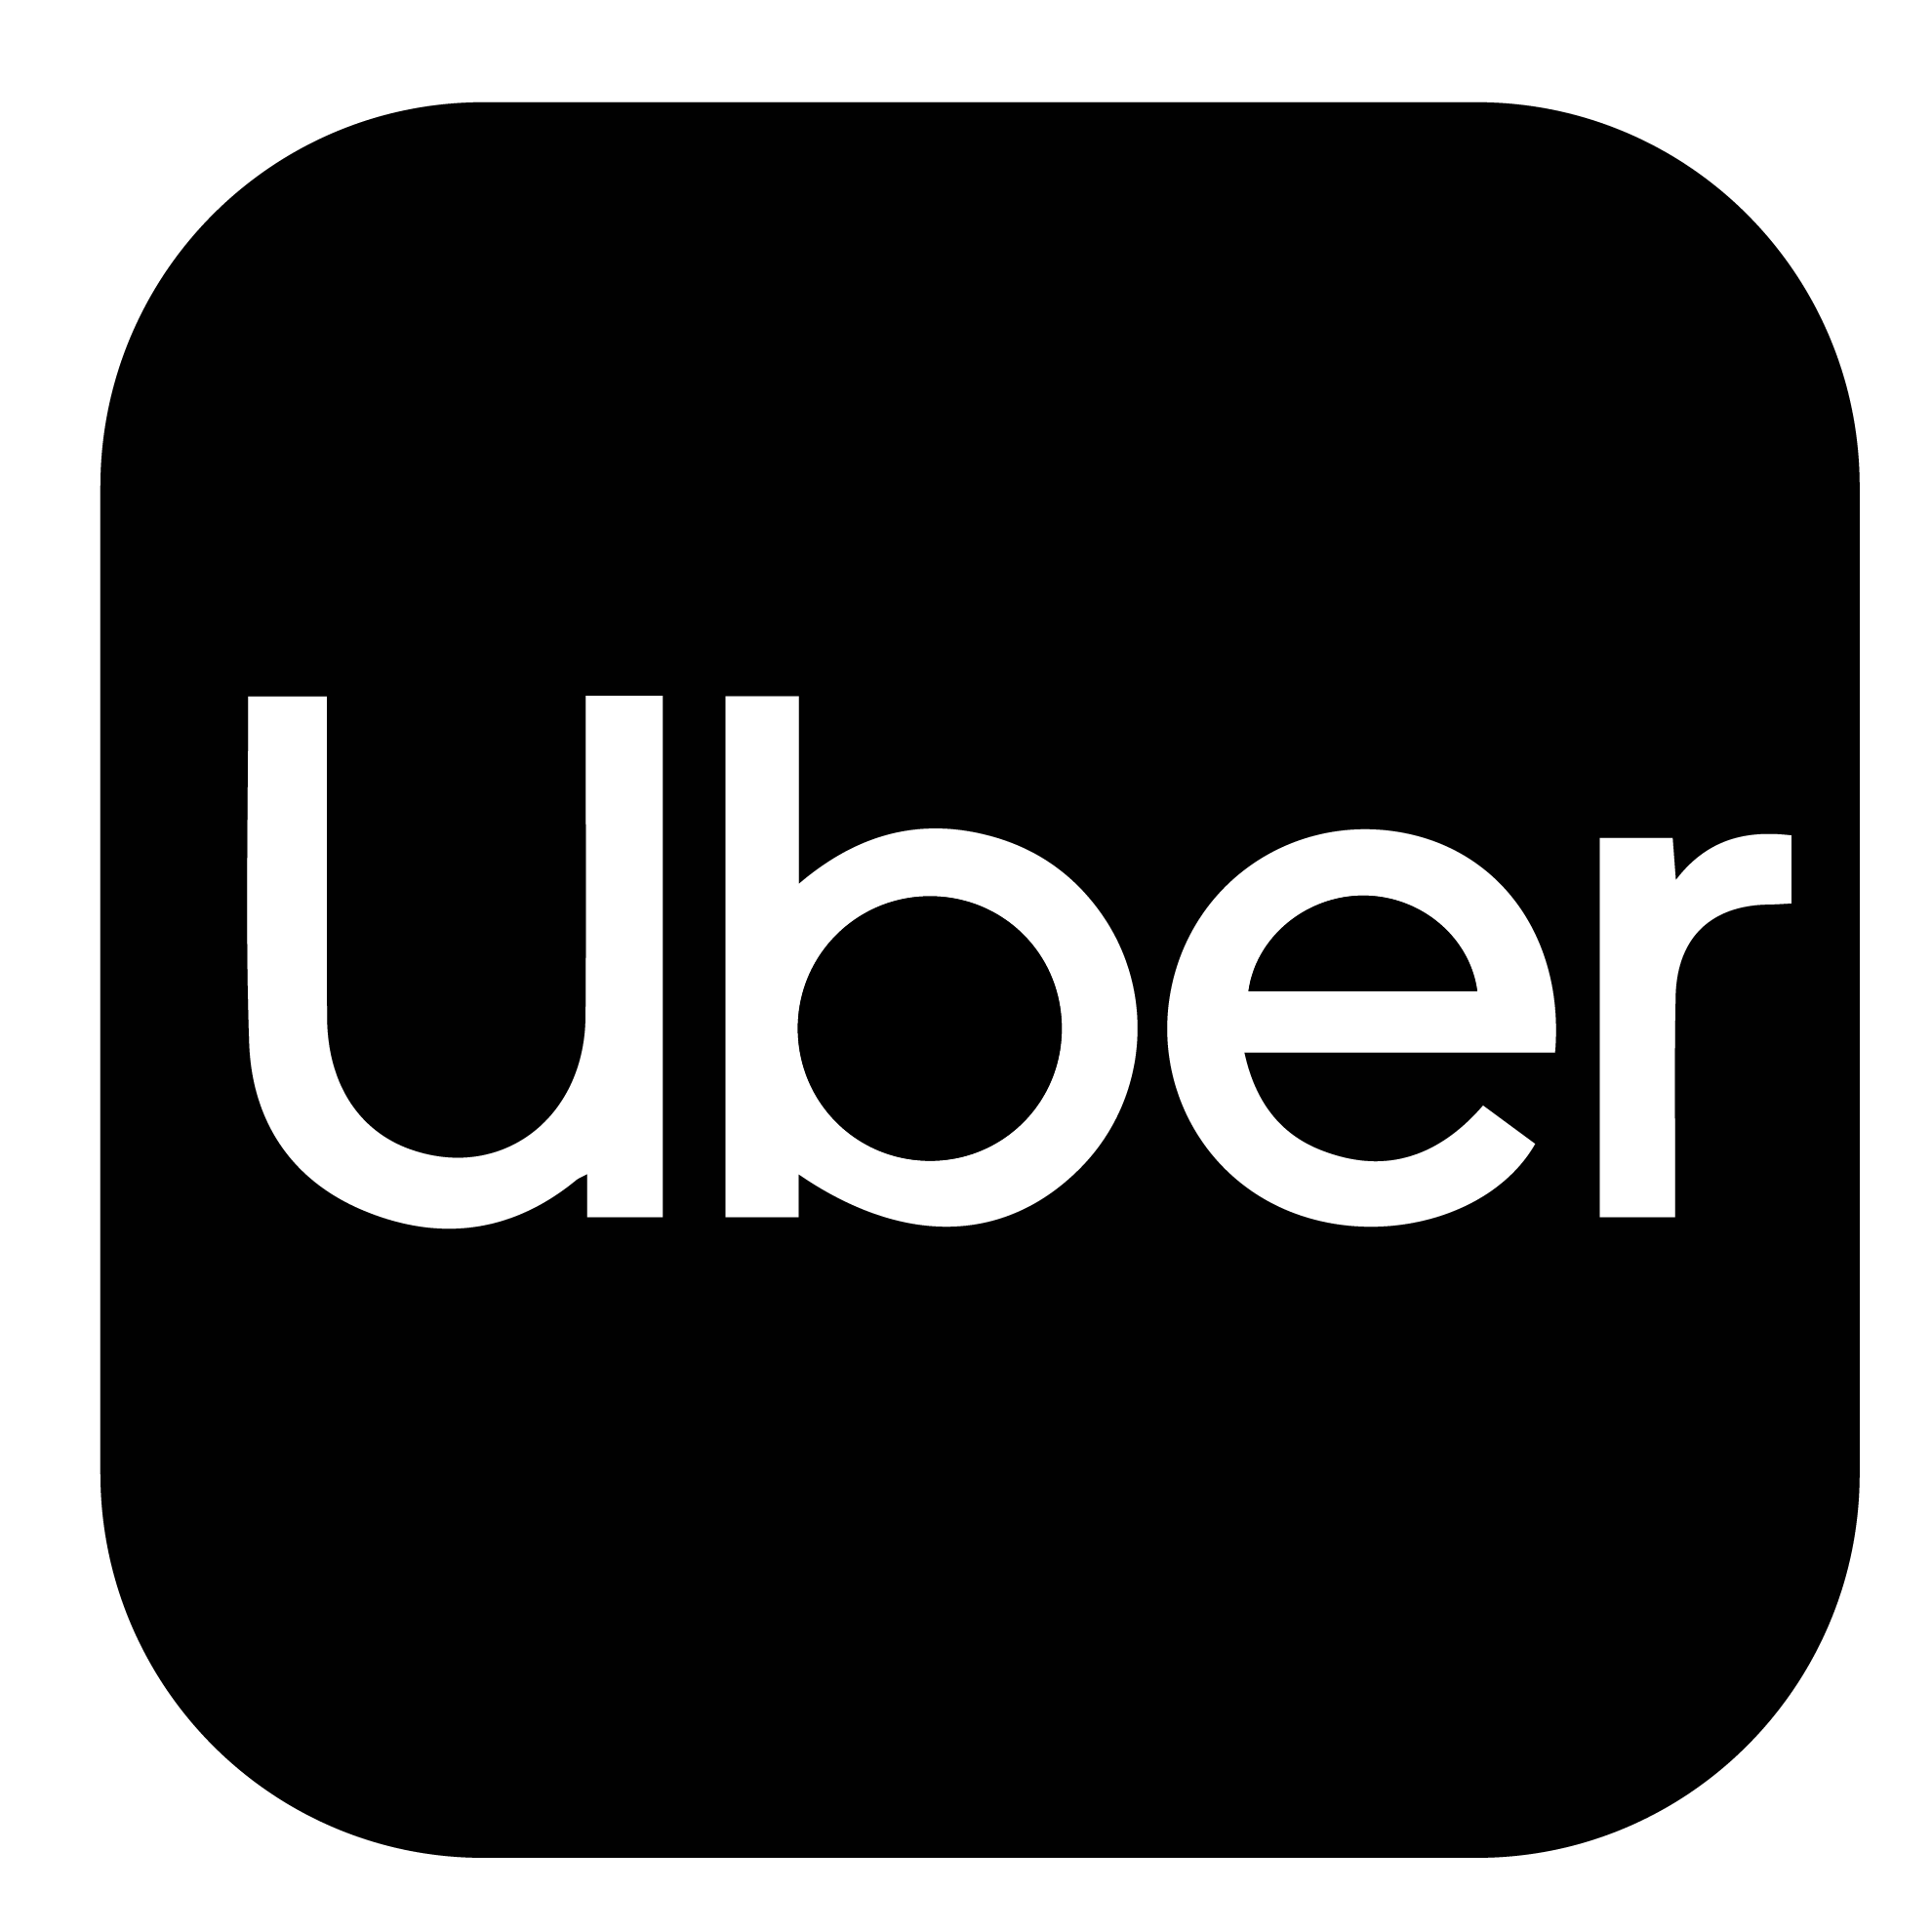 Logotipo Uber con tu celular recargas prepago Movistar